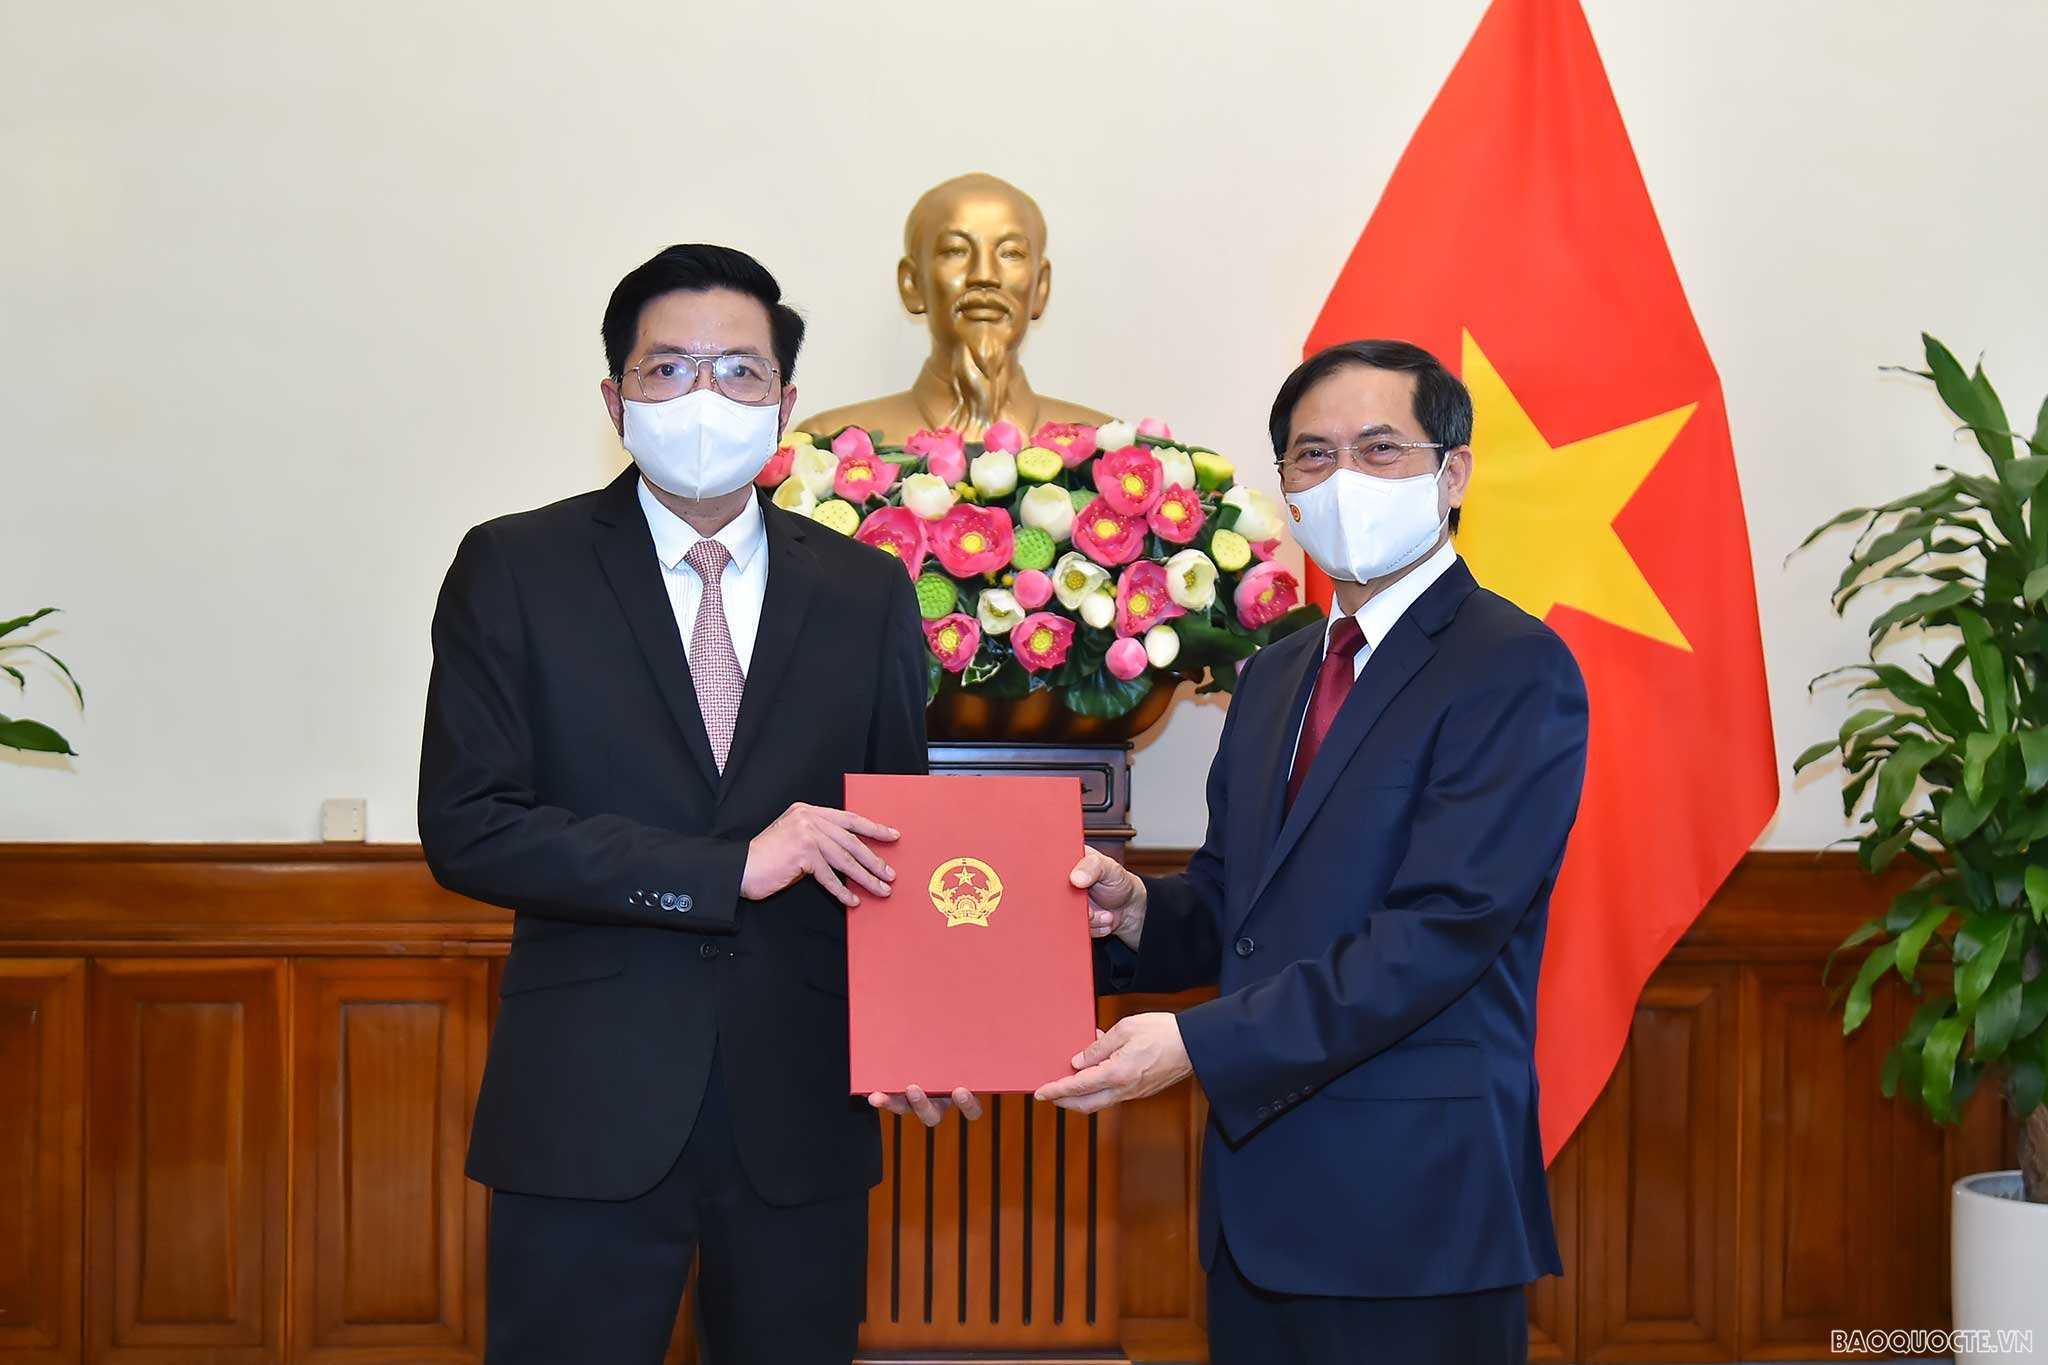 Bộ trưởng Ngoại giao Bùi Thanh Sơn trao quyết định điều động Vụ trưởng và bổ nhiệm Tổng Lãnh sự